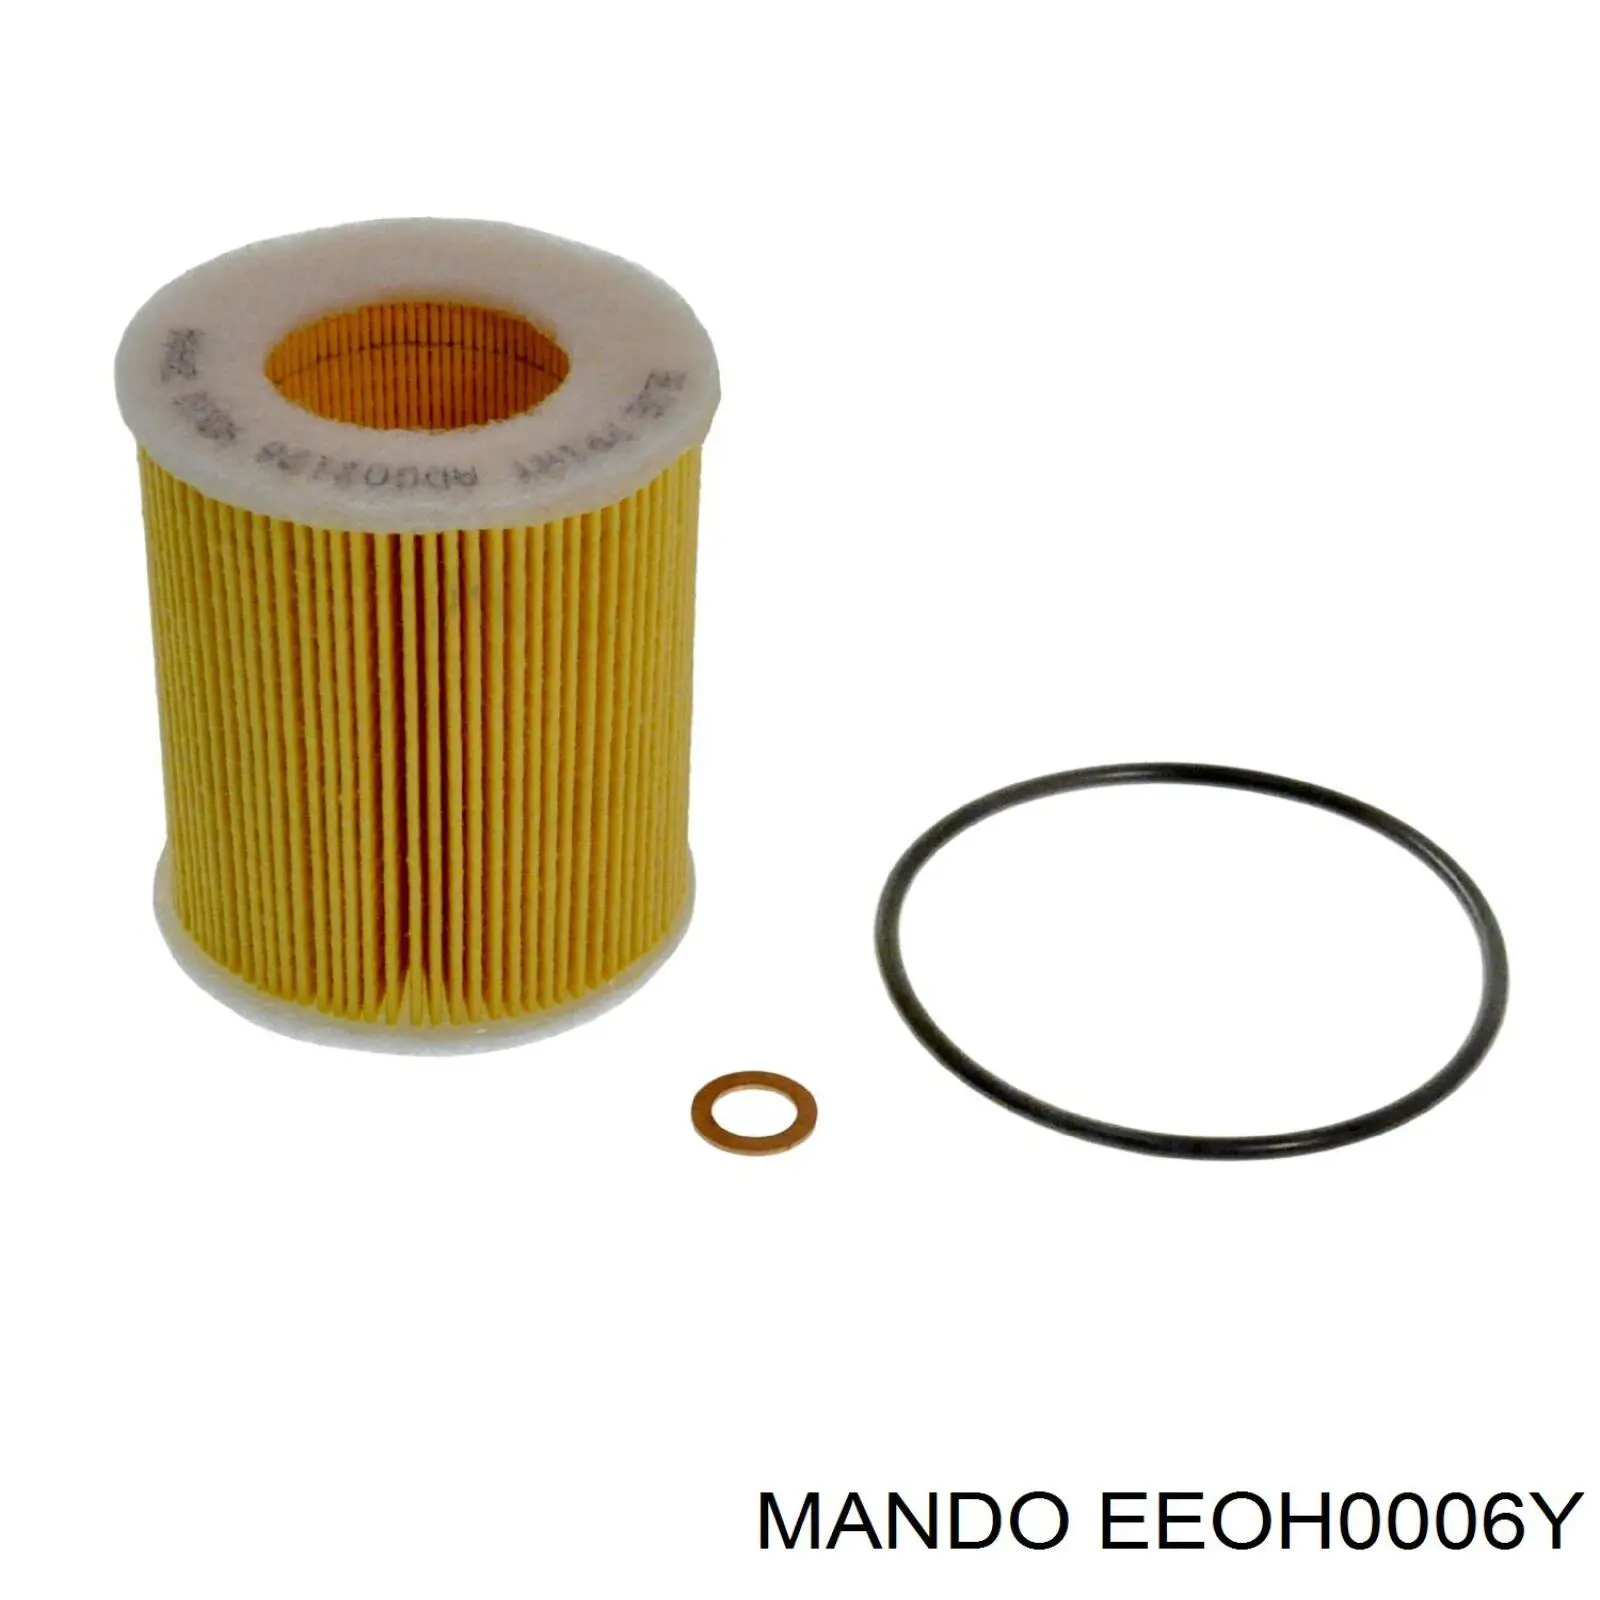 EEOH0006Y Mando масляный фильтр